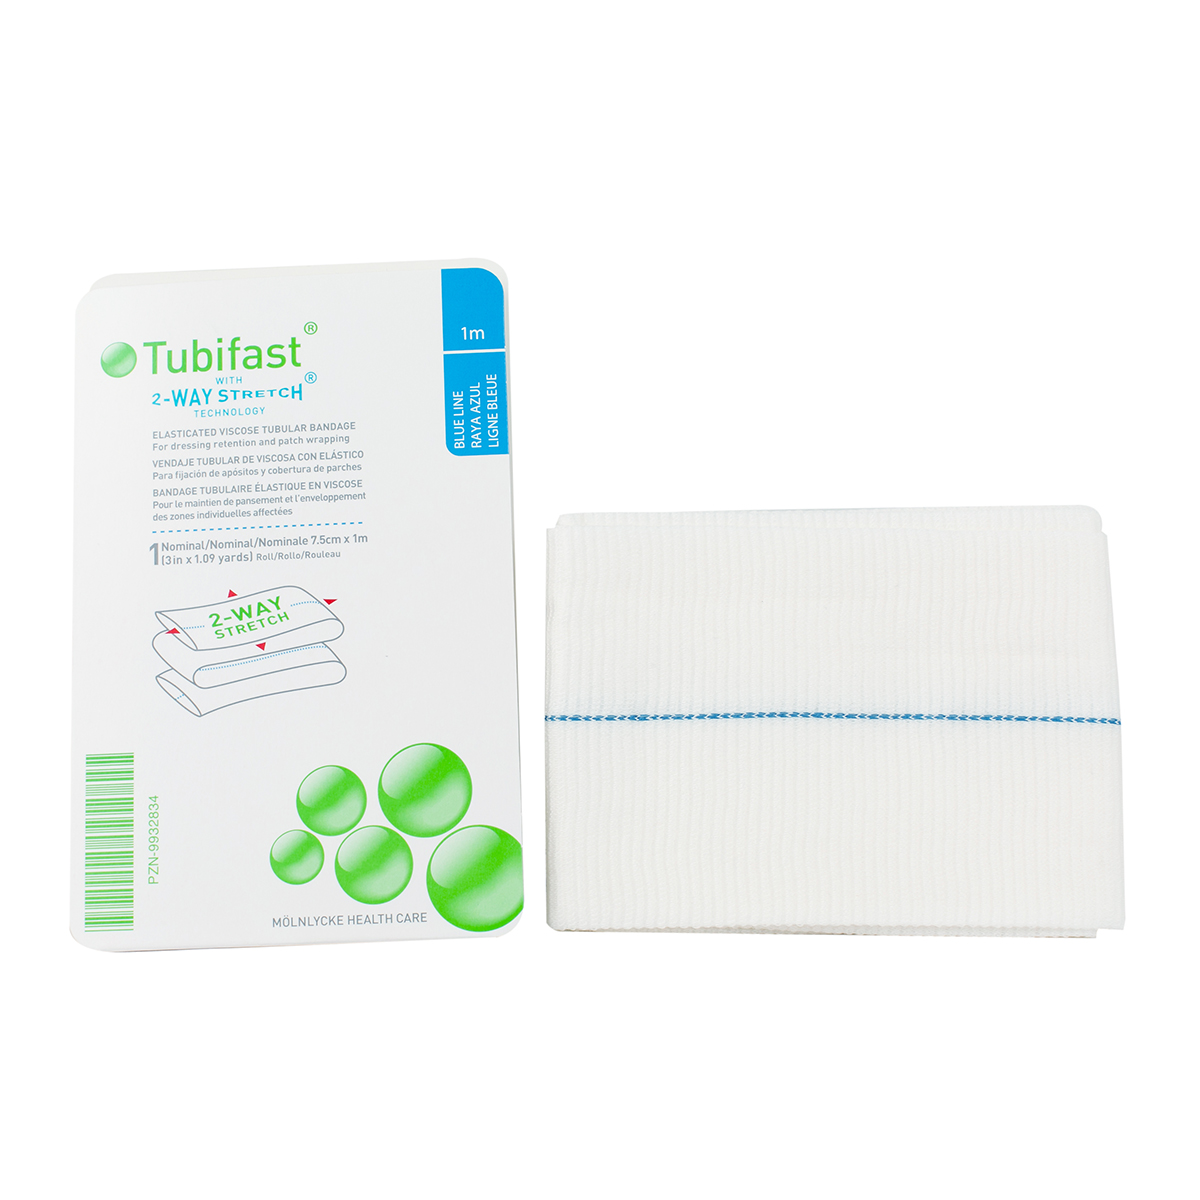 7.5cm x 1m Tubifast Tubular Bandage for Larger Limbs